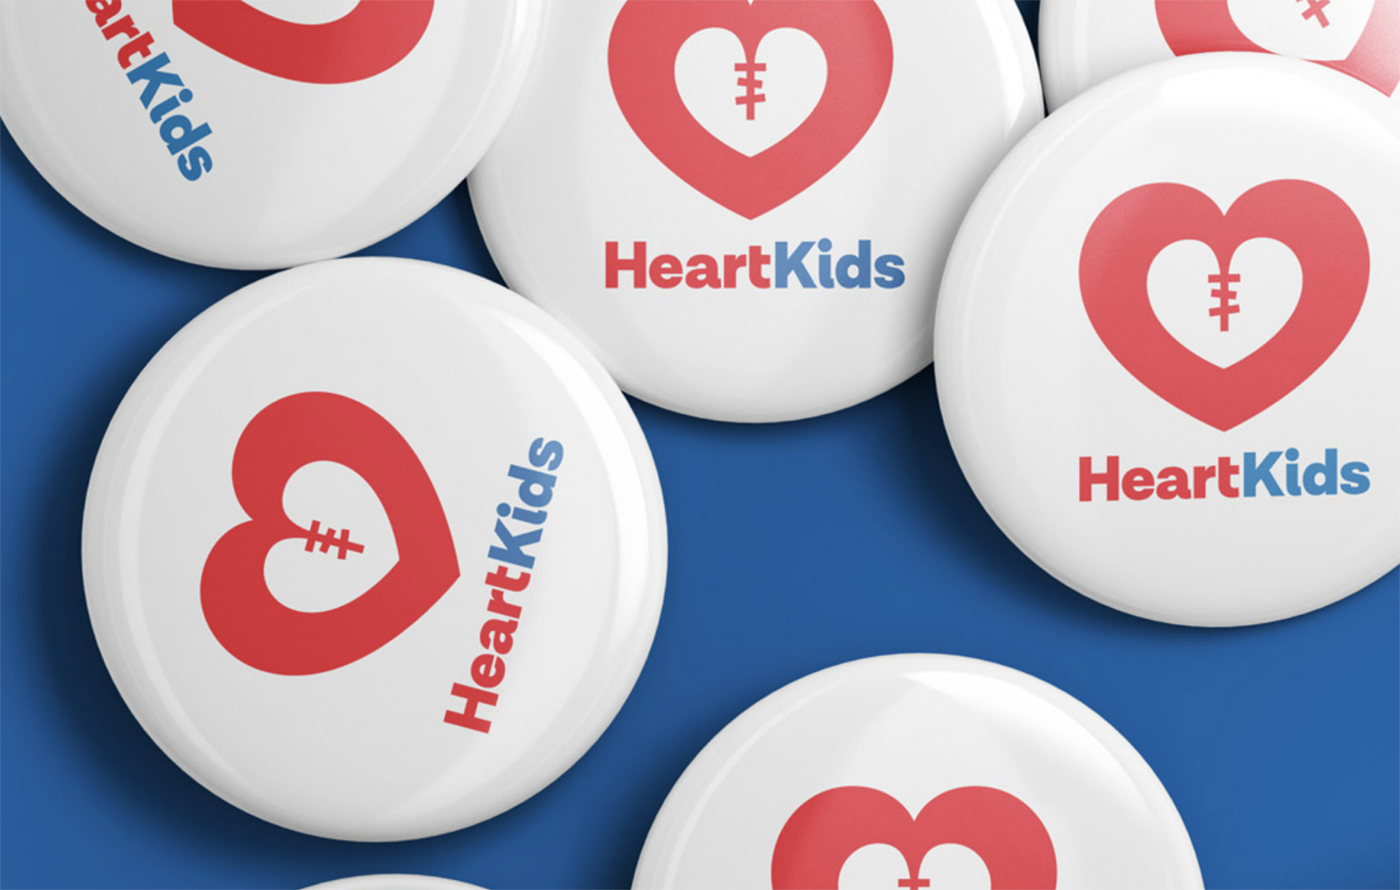 品牌设计公司操刀先天性心脏病营利性慈善机构logo设计和品牌形象设计